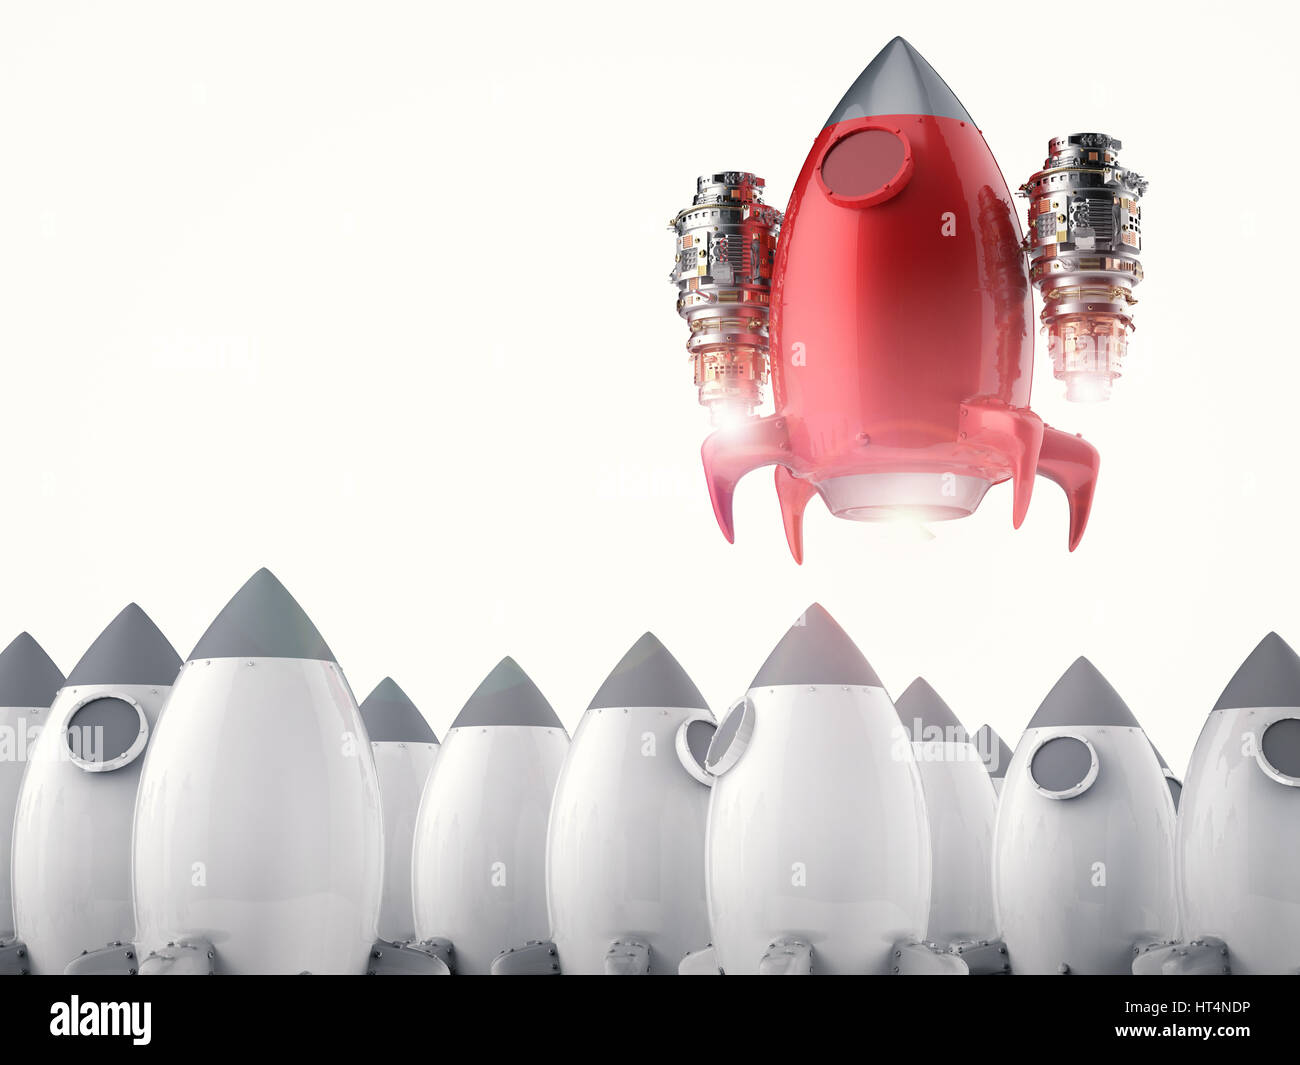 Concepto de liderazgo con 3D rendering red rocket el lanzamiento Foto de stock